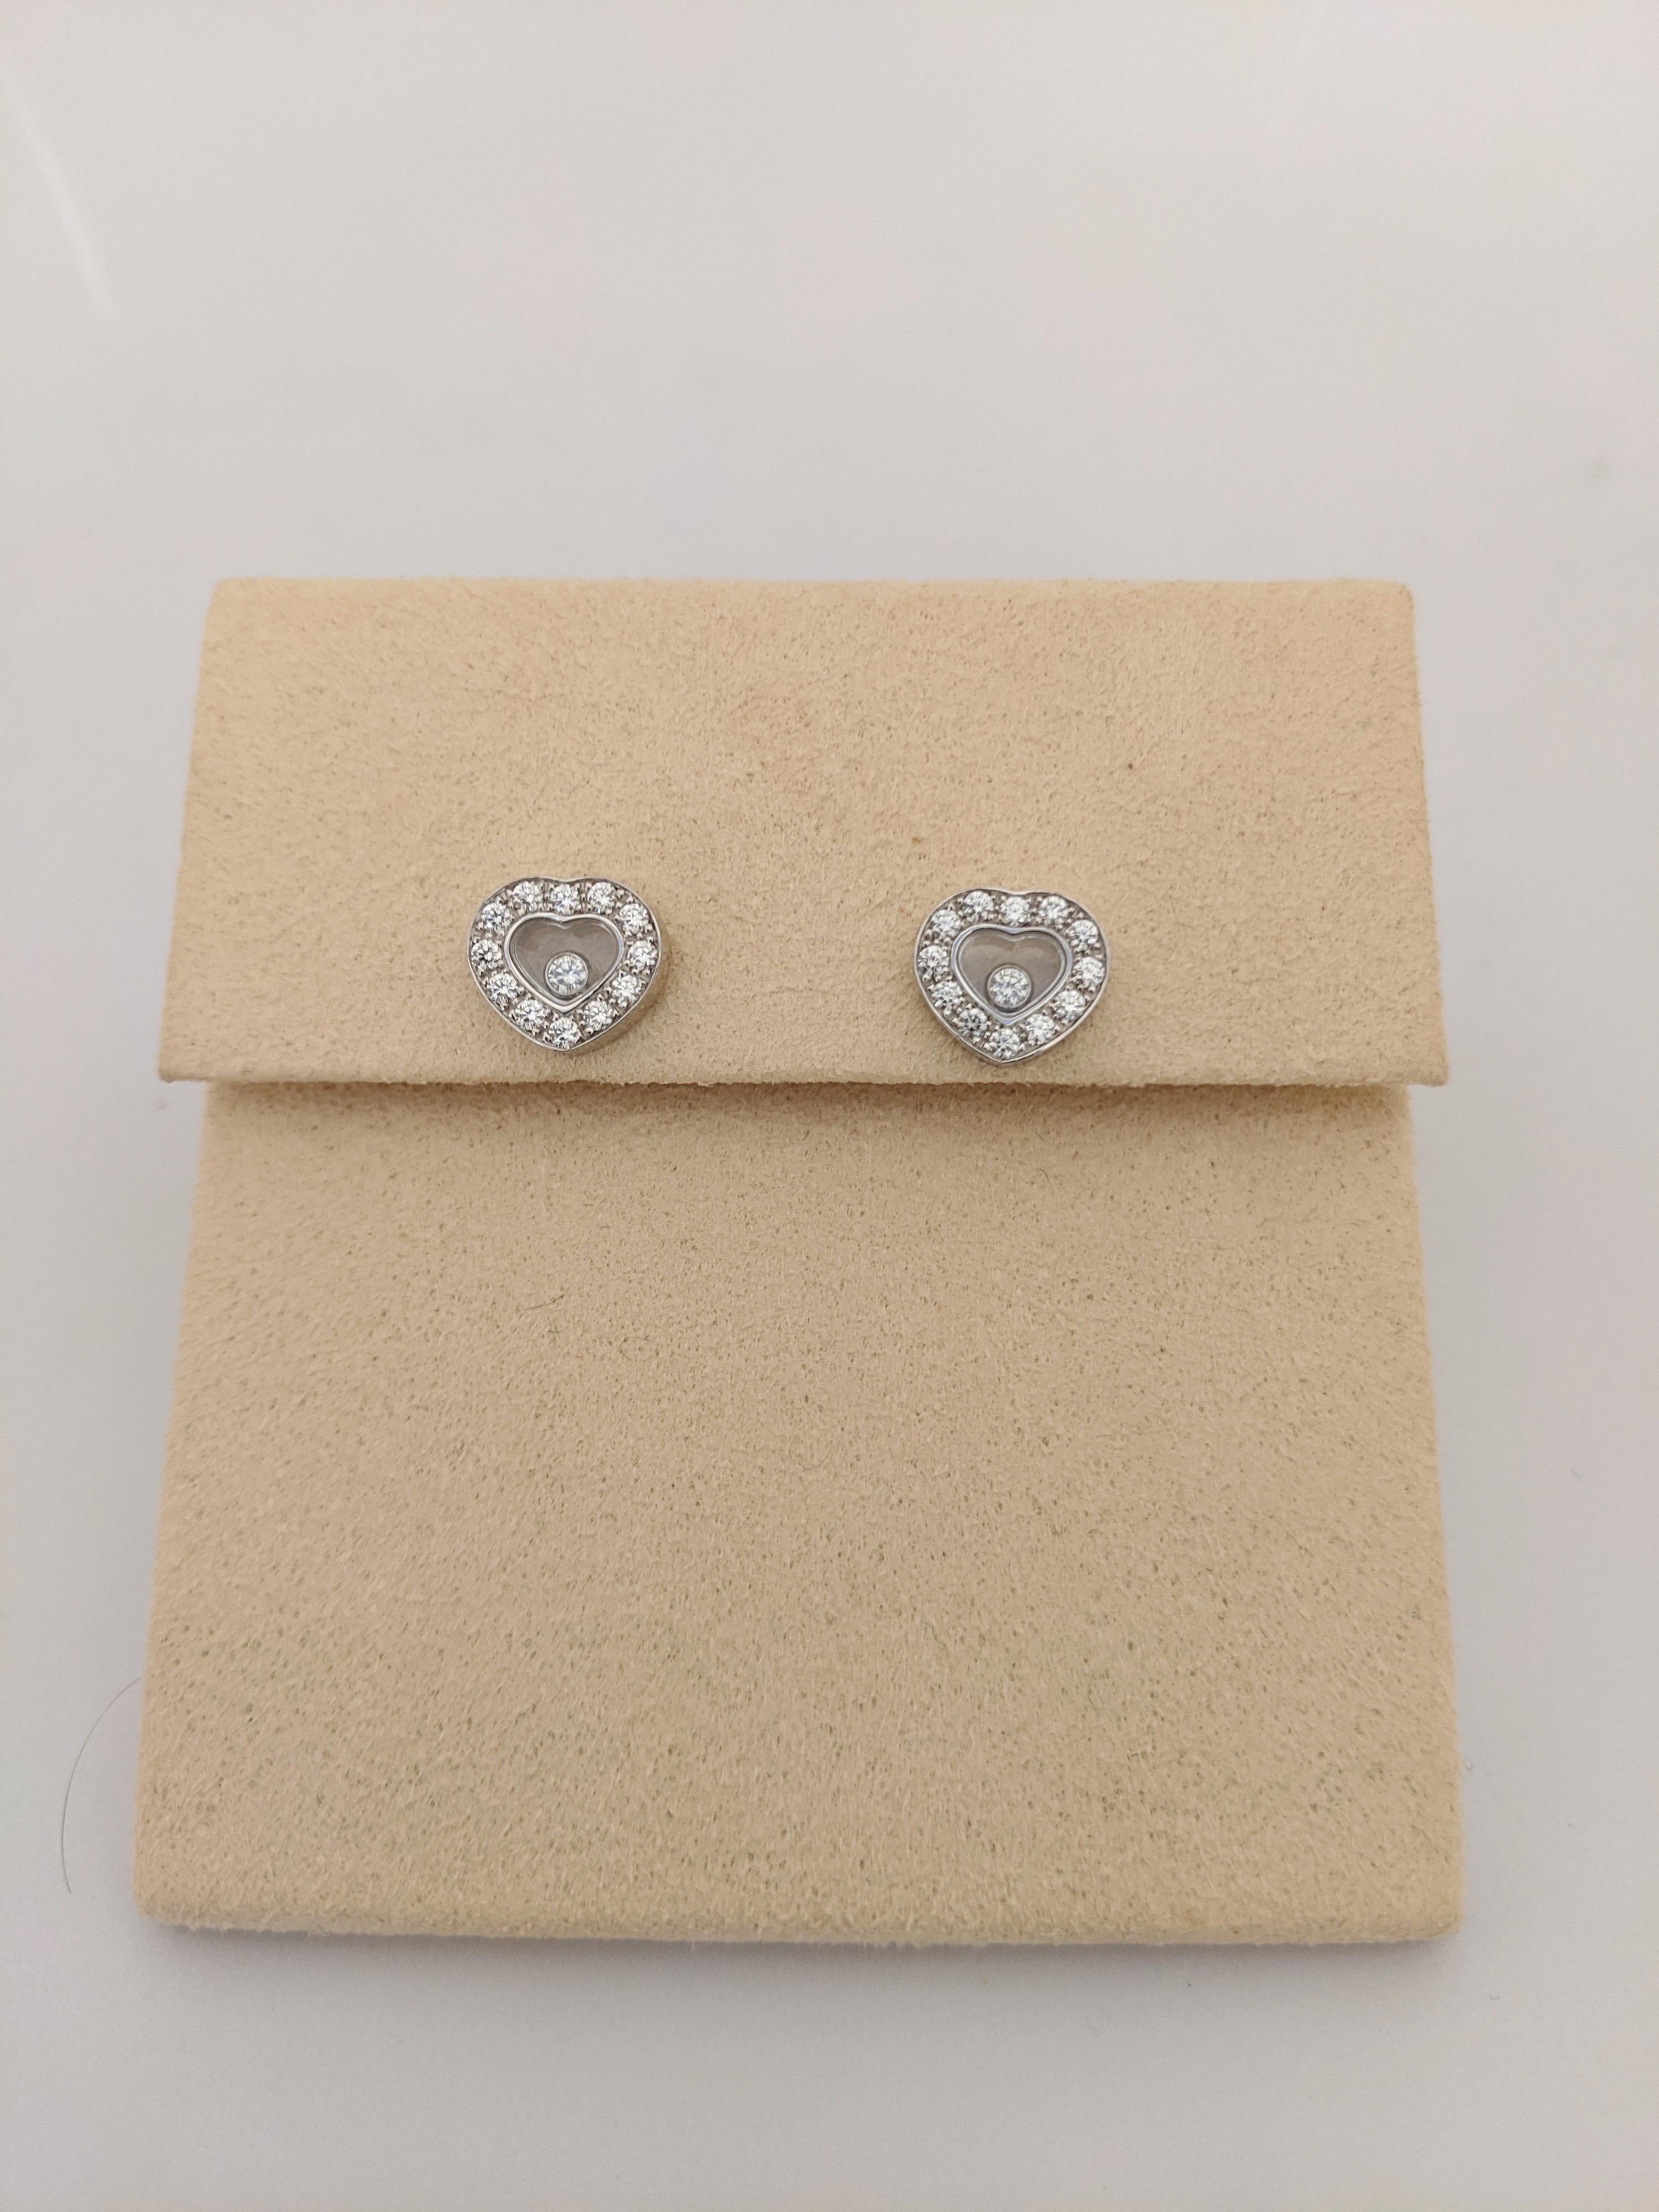 Modern Chopard 18 Karat Gold Diamond Heart Stud Earrings with Single Floating Diamond For Sale